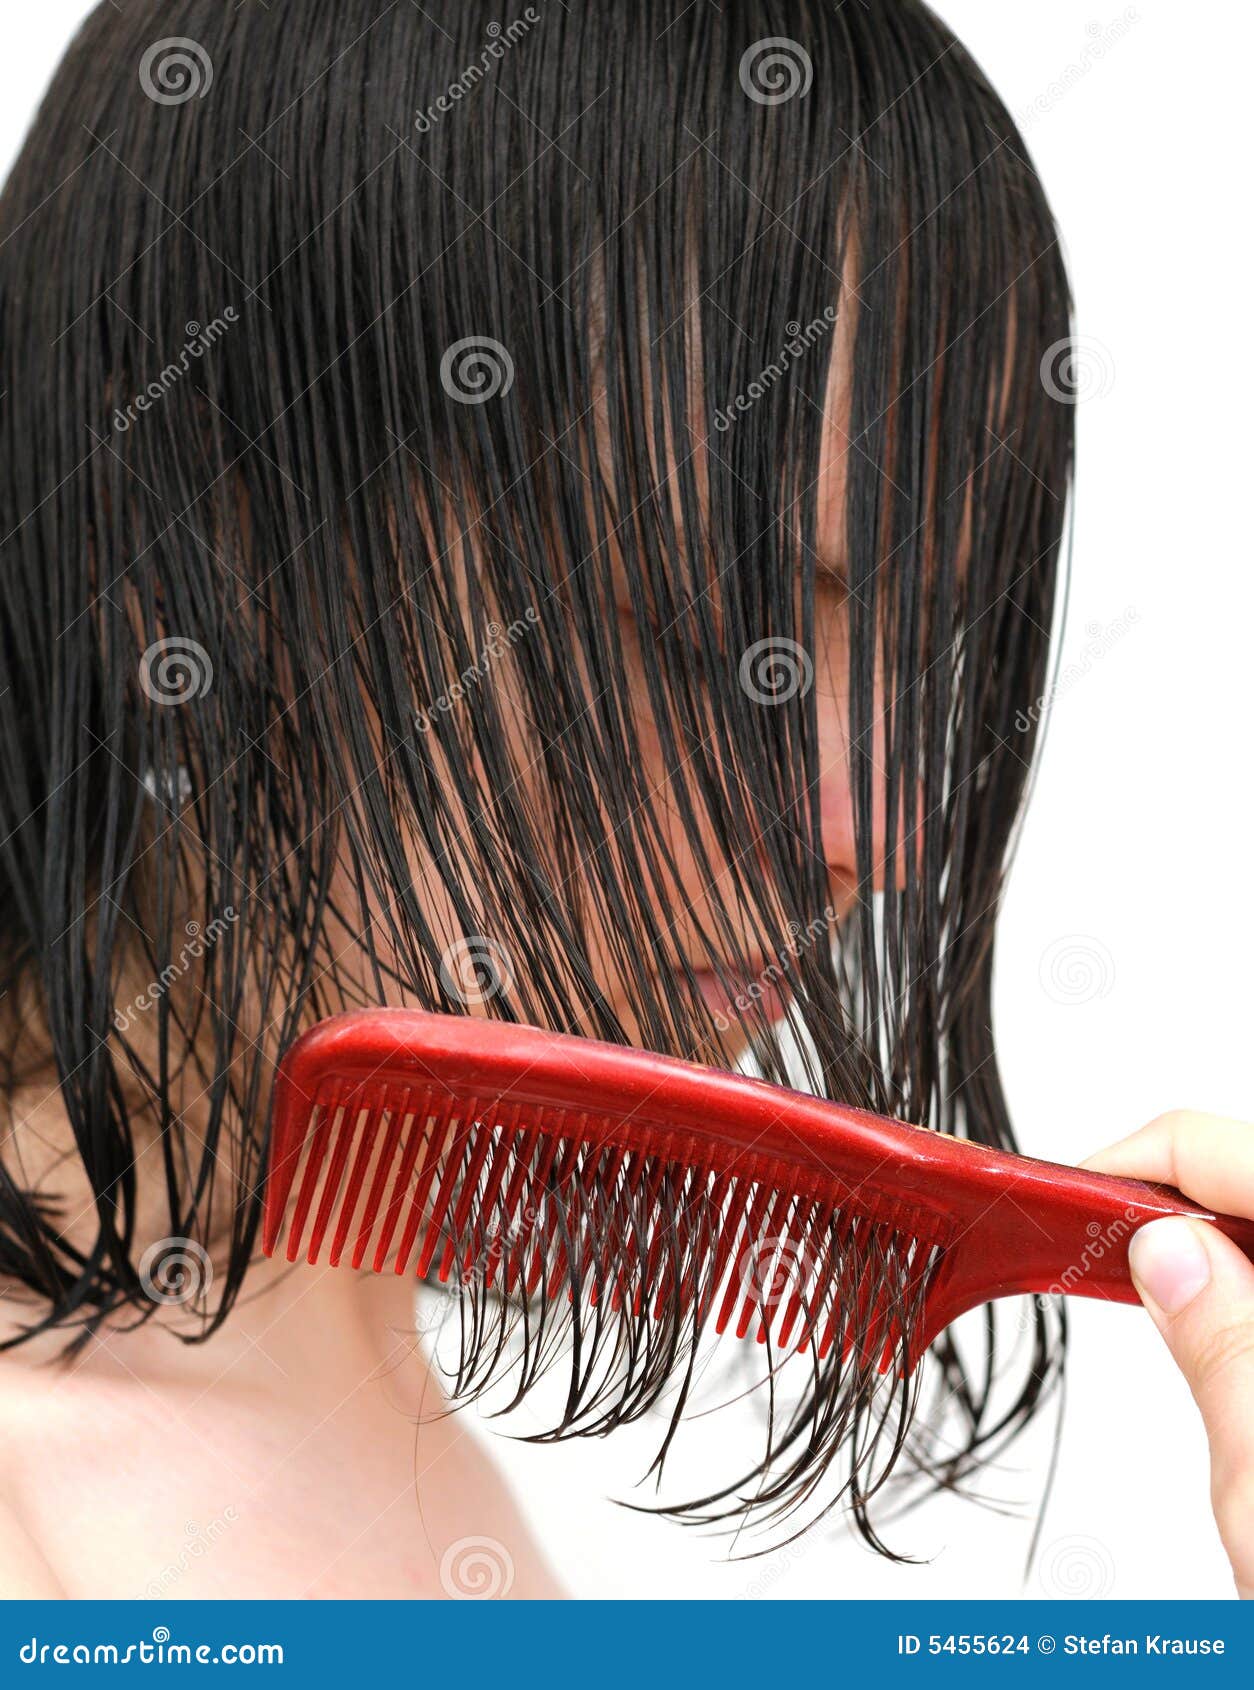 Combing wet hair stock photo. Image of teen, teenager - 5455624